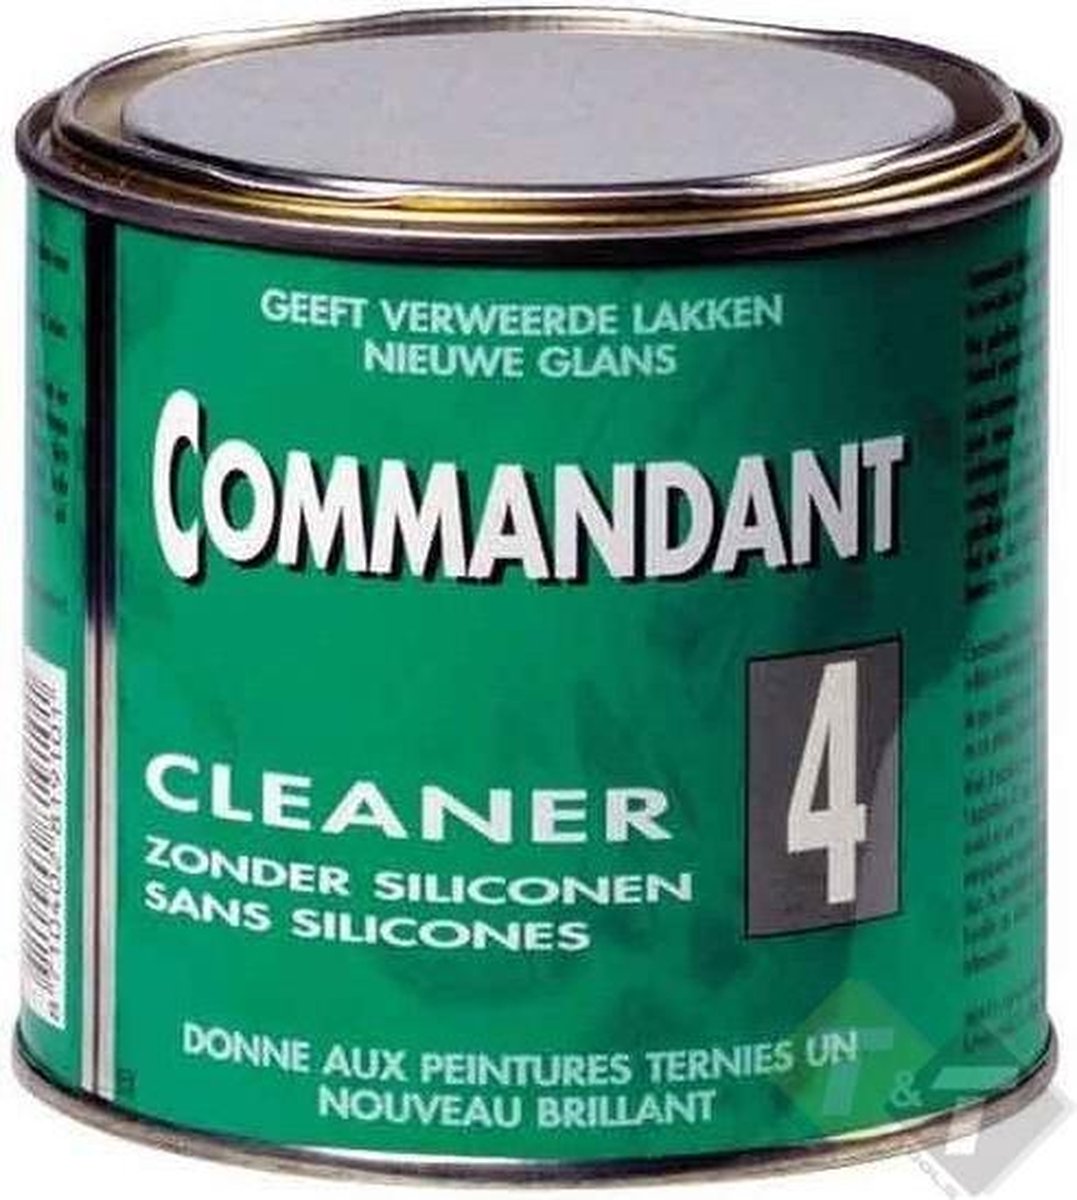 Commandant cleaner 4 , Nummer 4, Commandant, autopoets